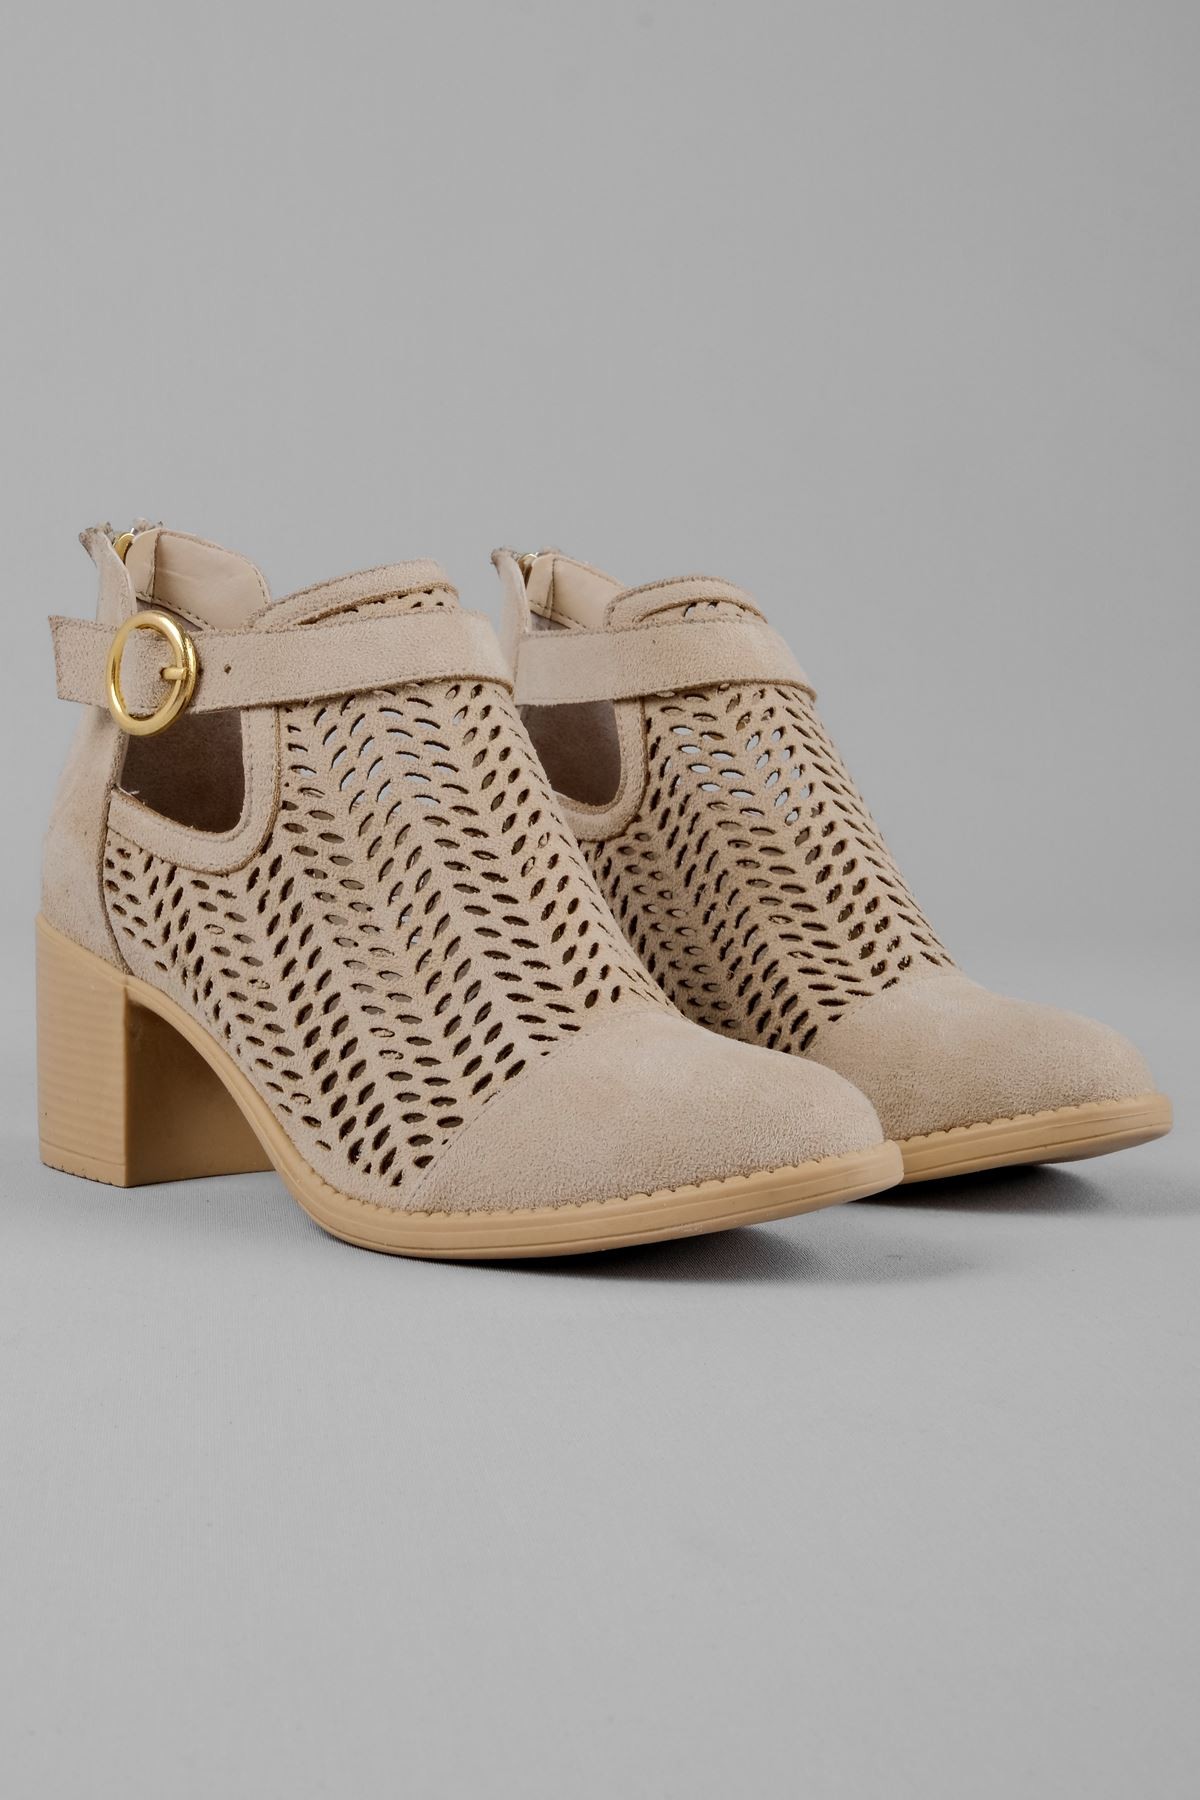 Adele Kadın Yazlık Delikli Bot Topuklu Ayakkabı (B2236) - S.VİZYON